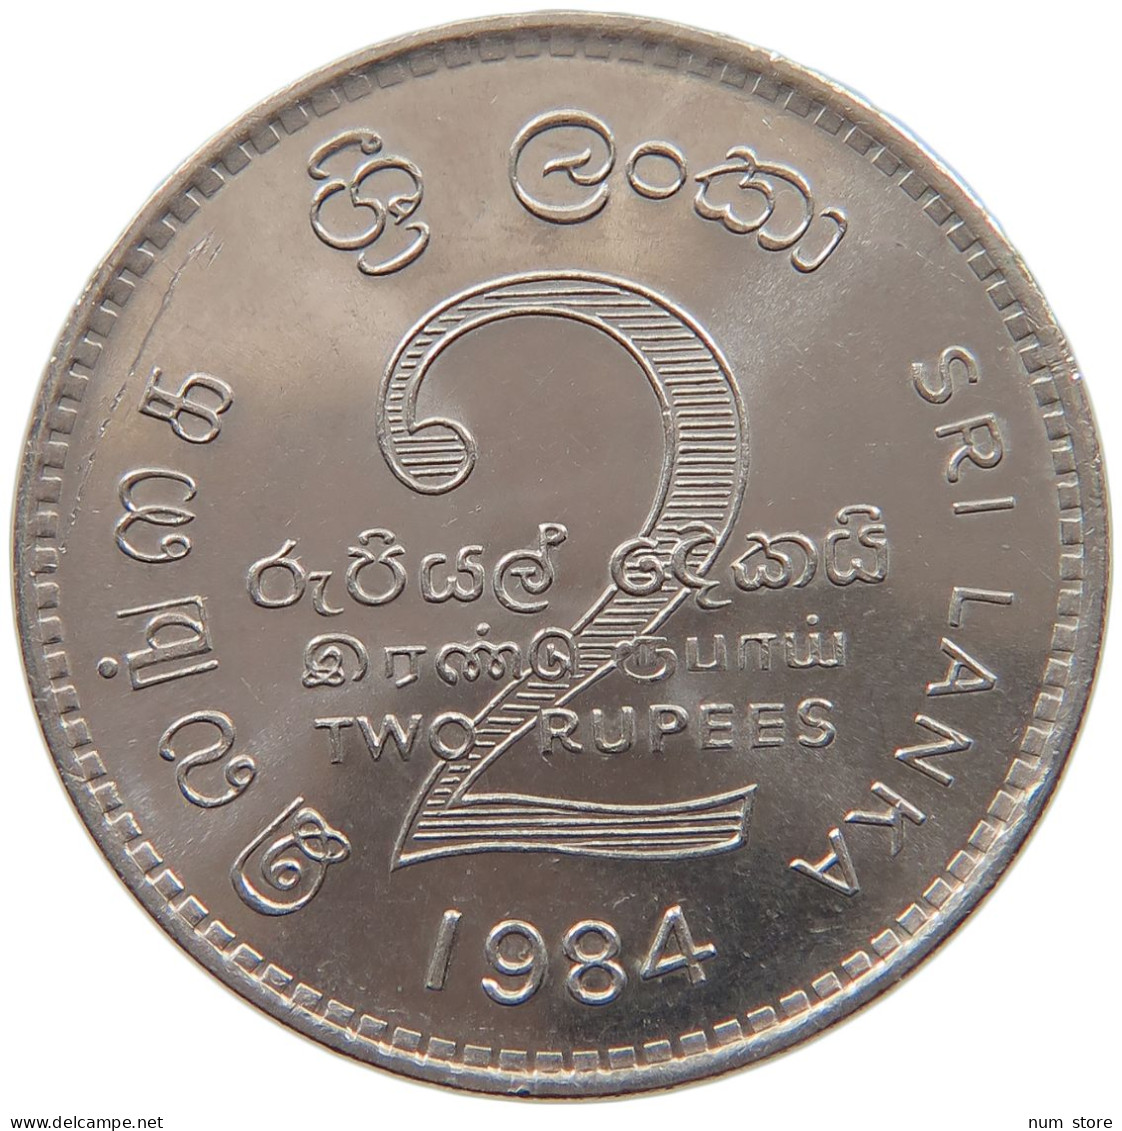 CEYLON 2 RUPEES 1984  #c010 0153 - Sri Lanka